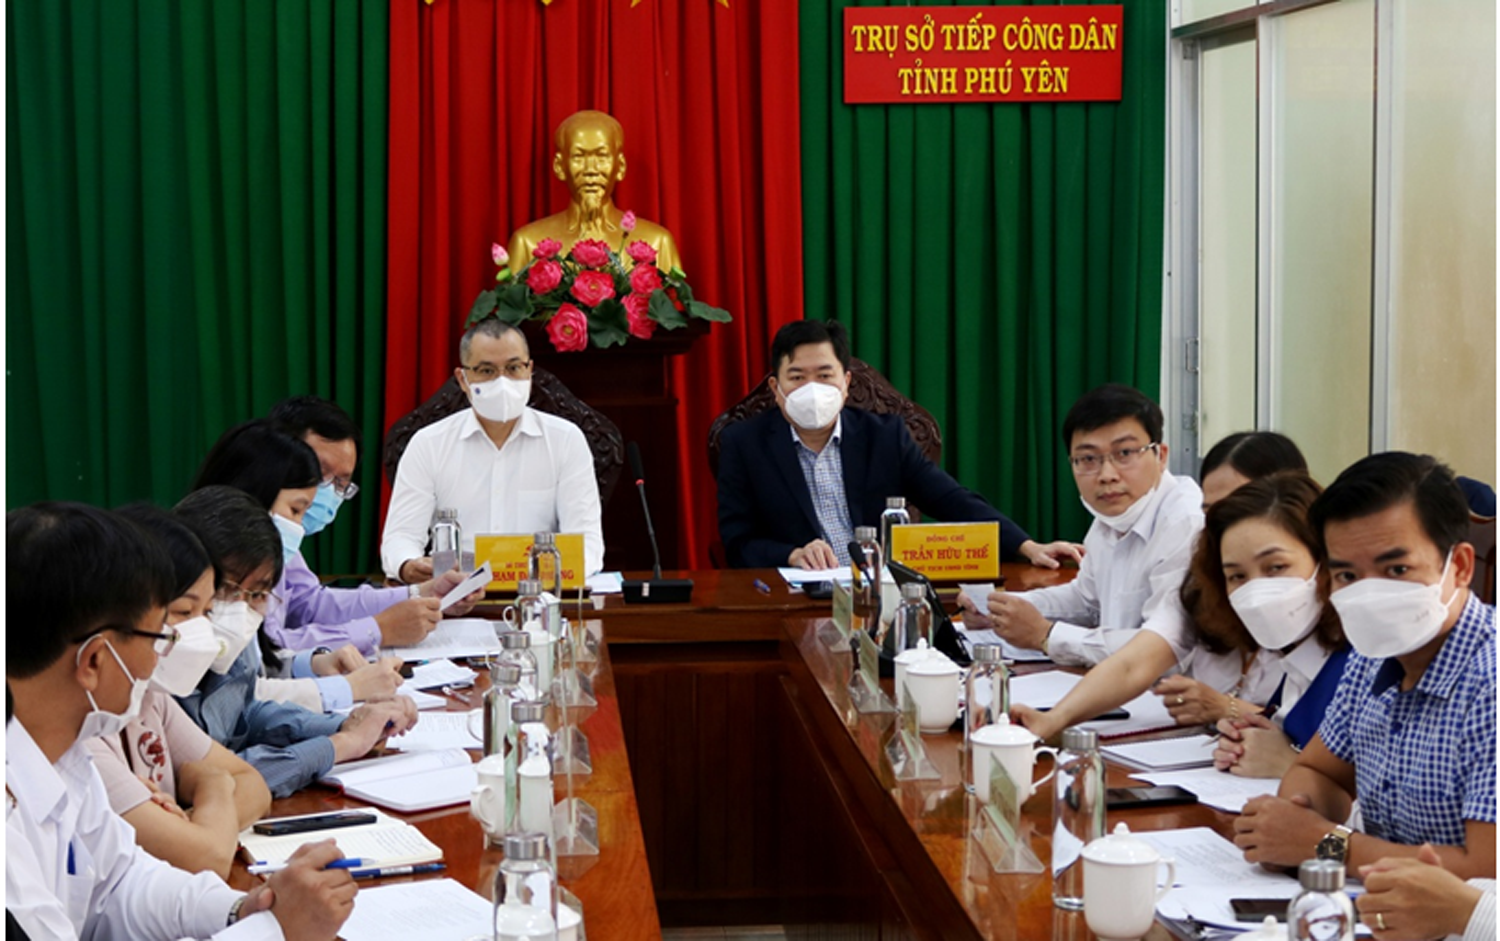 Bí thư, Chủ tịch tỉnh Phú Yên lần đầu tiên tiếp công dân trực tuyến - Ảnh 2.